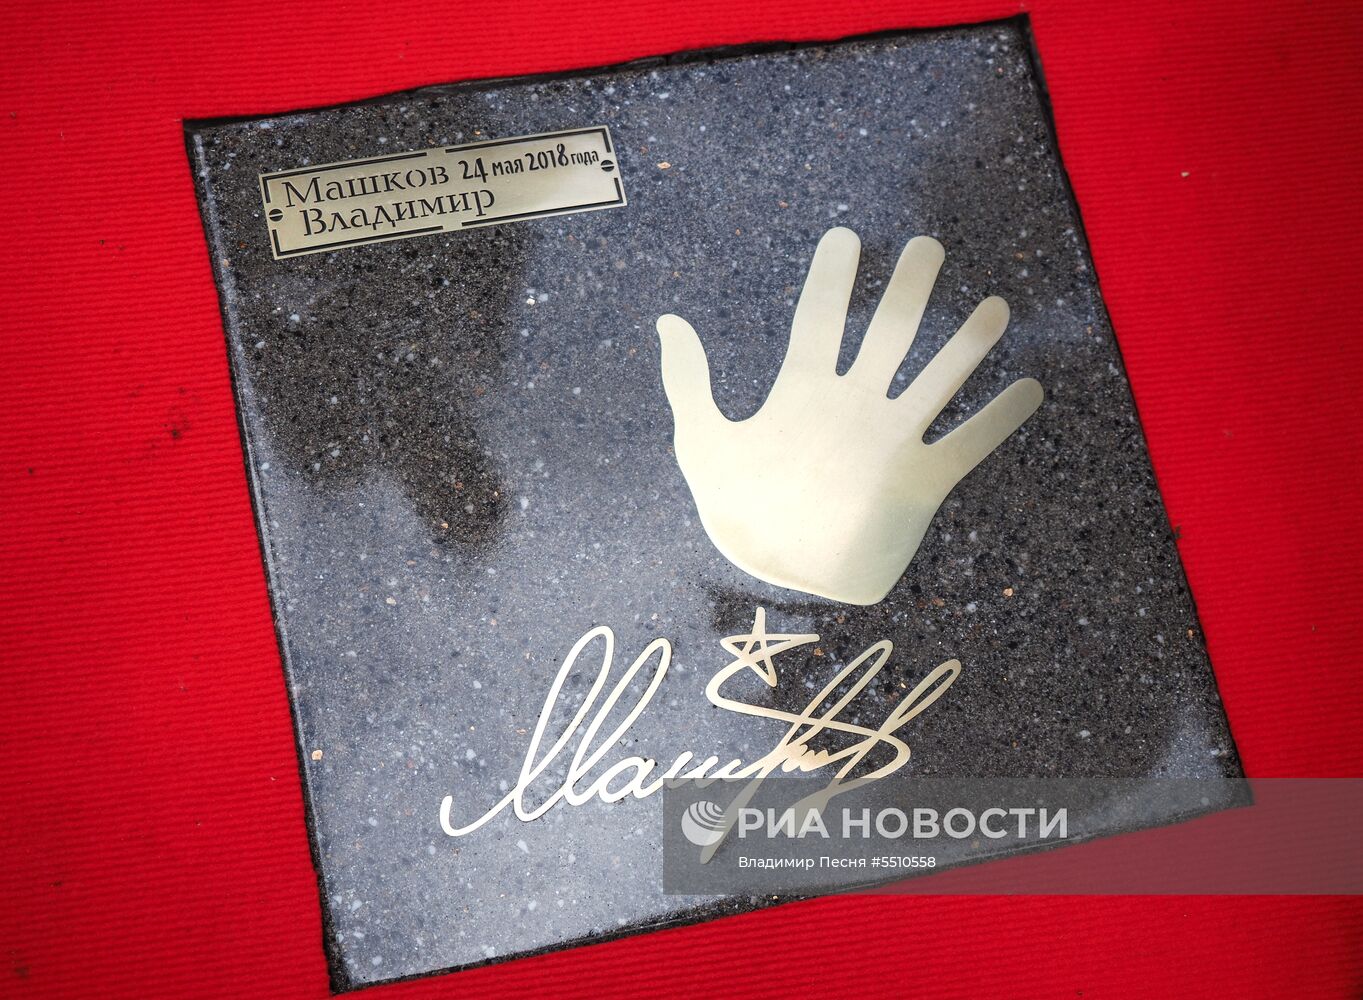 Закладка именных плит актерам на Площади звезд в Москве 